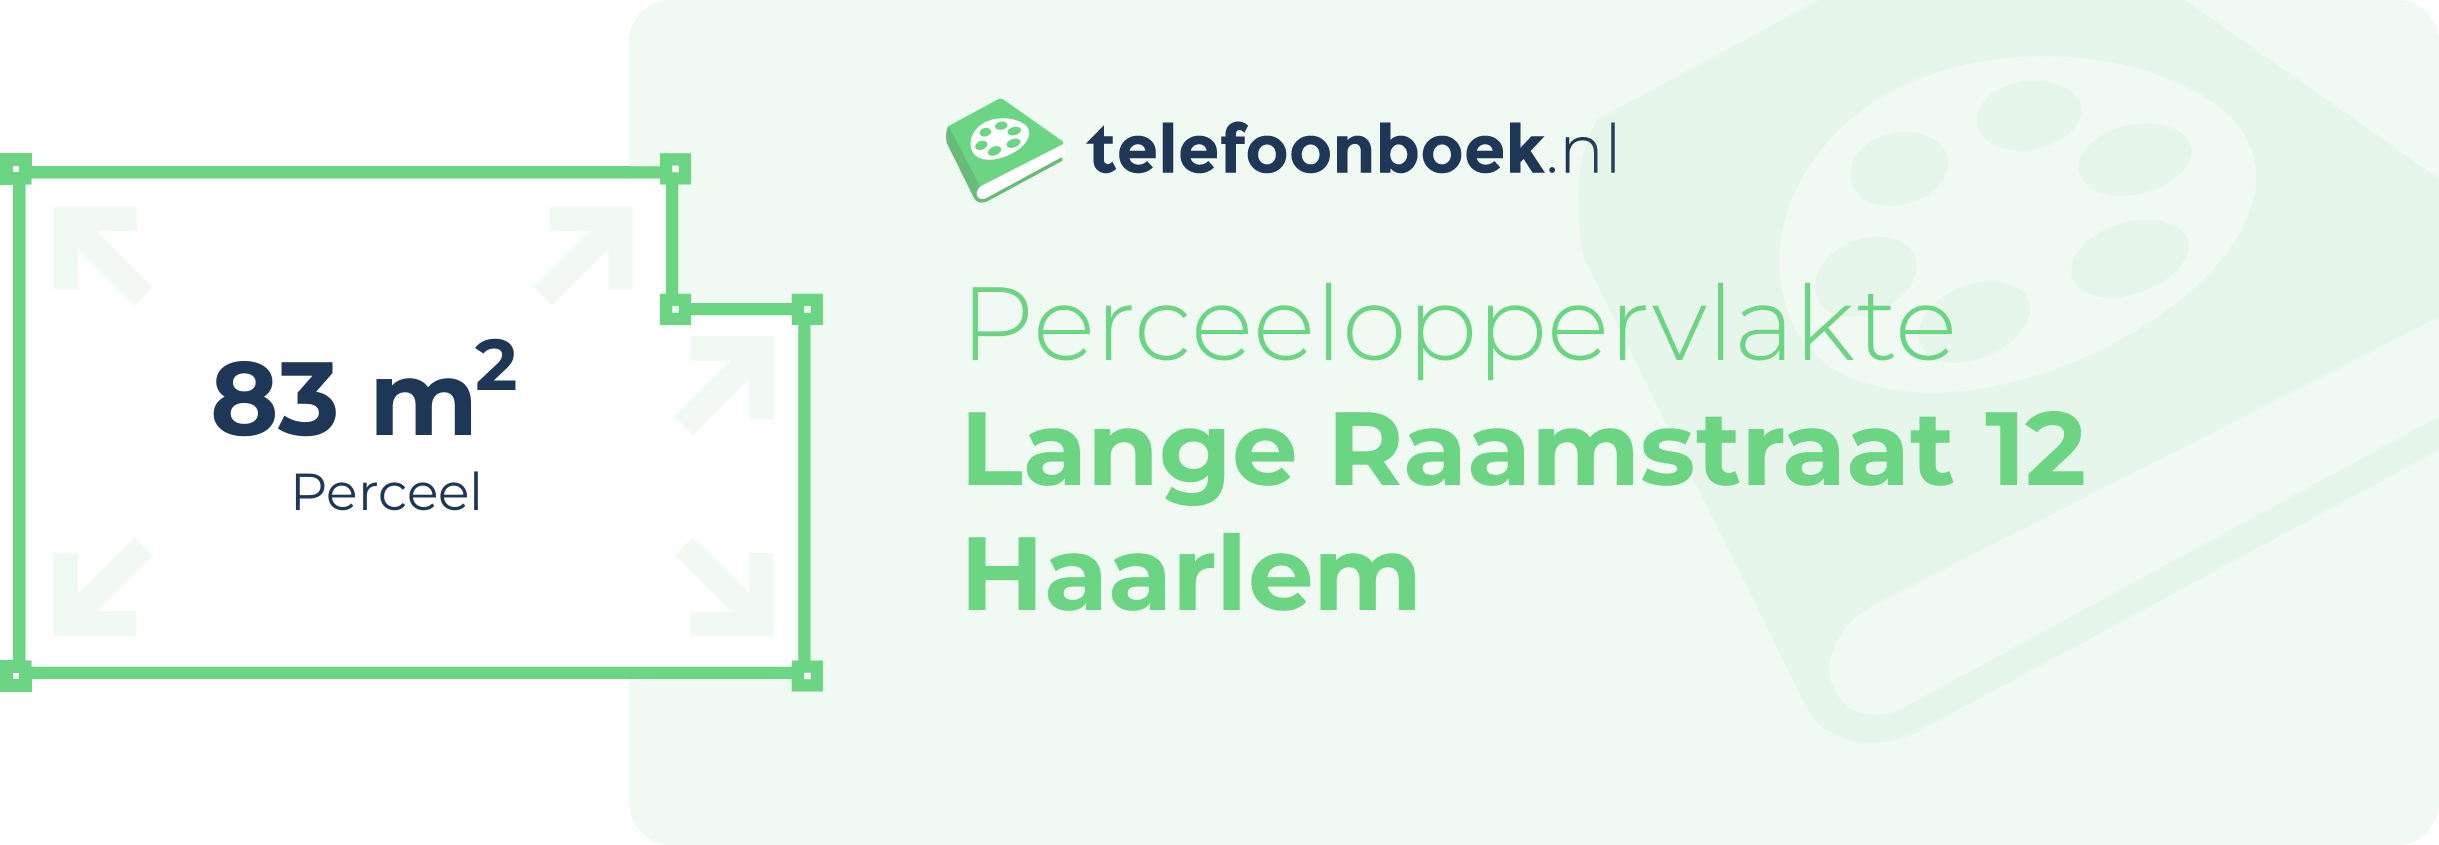 Perceeloppervlakte Lange Raamstraat 12 Haarlem